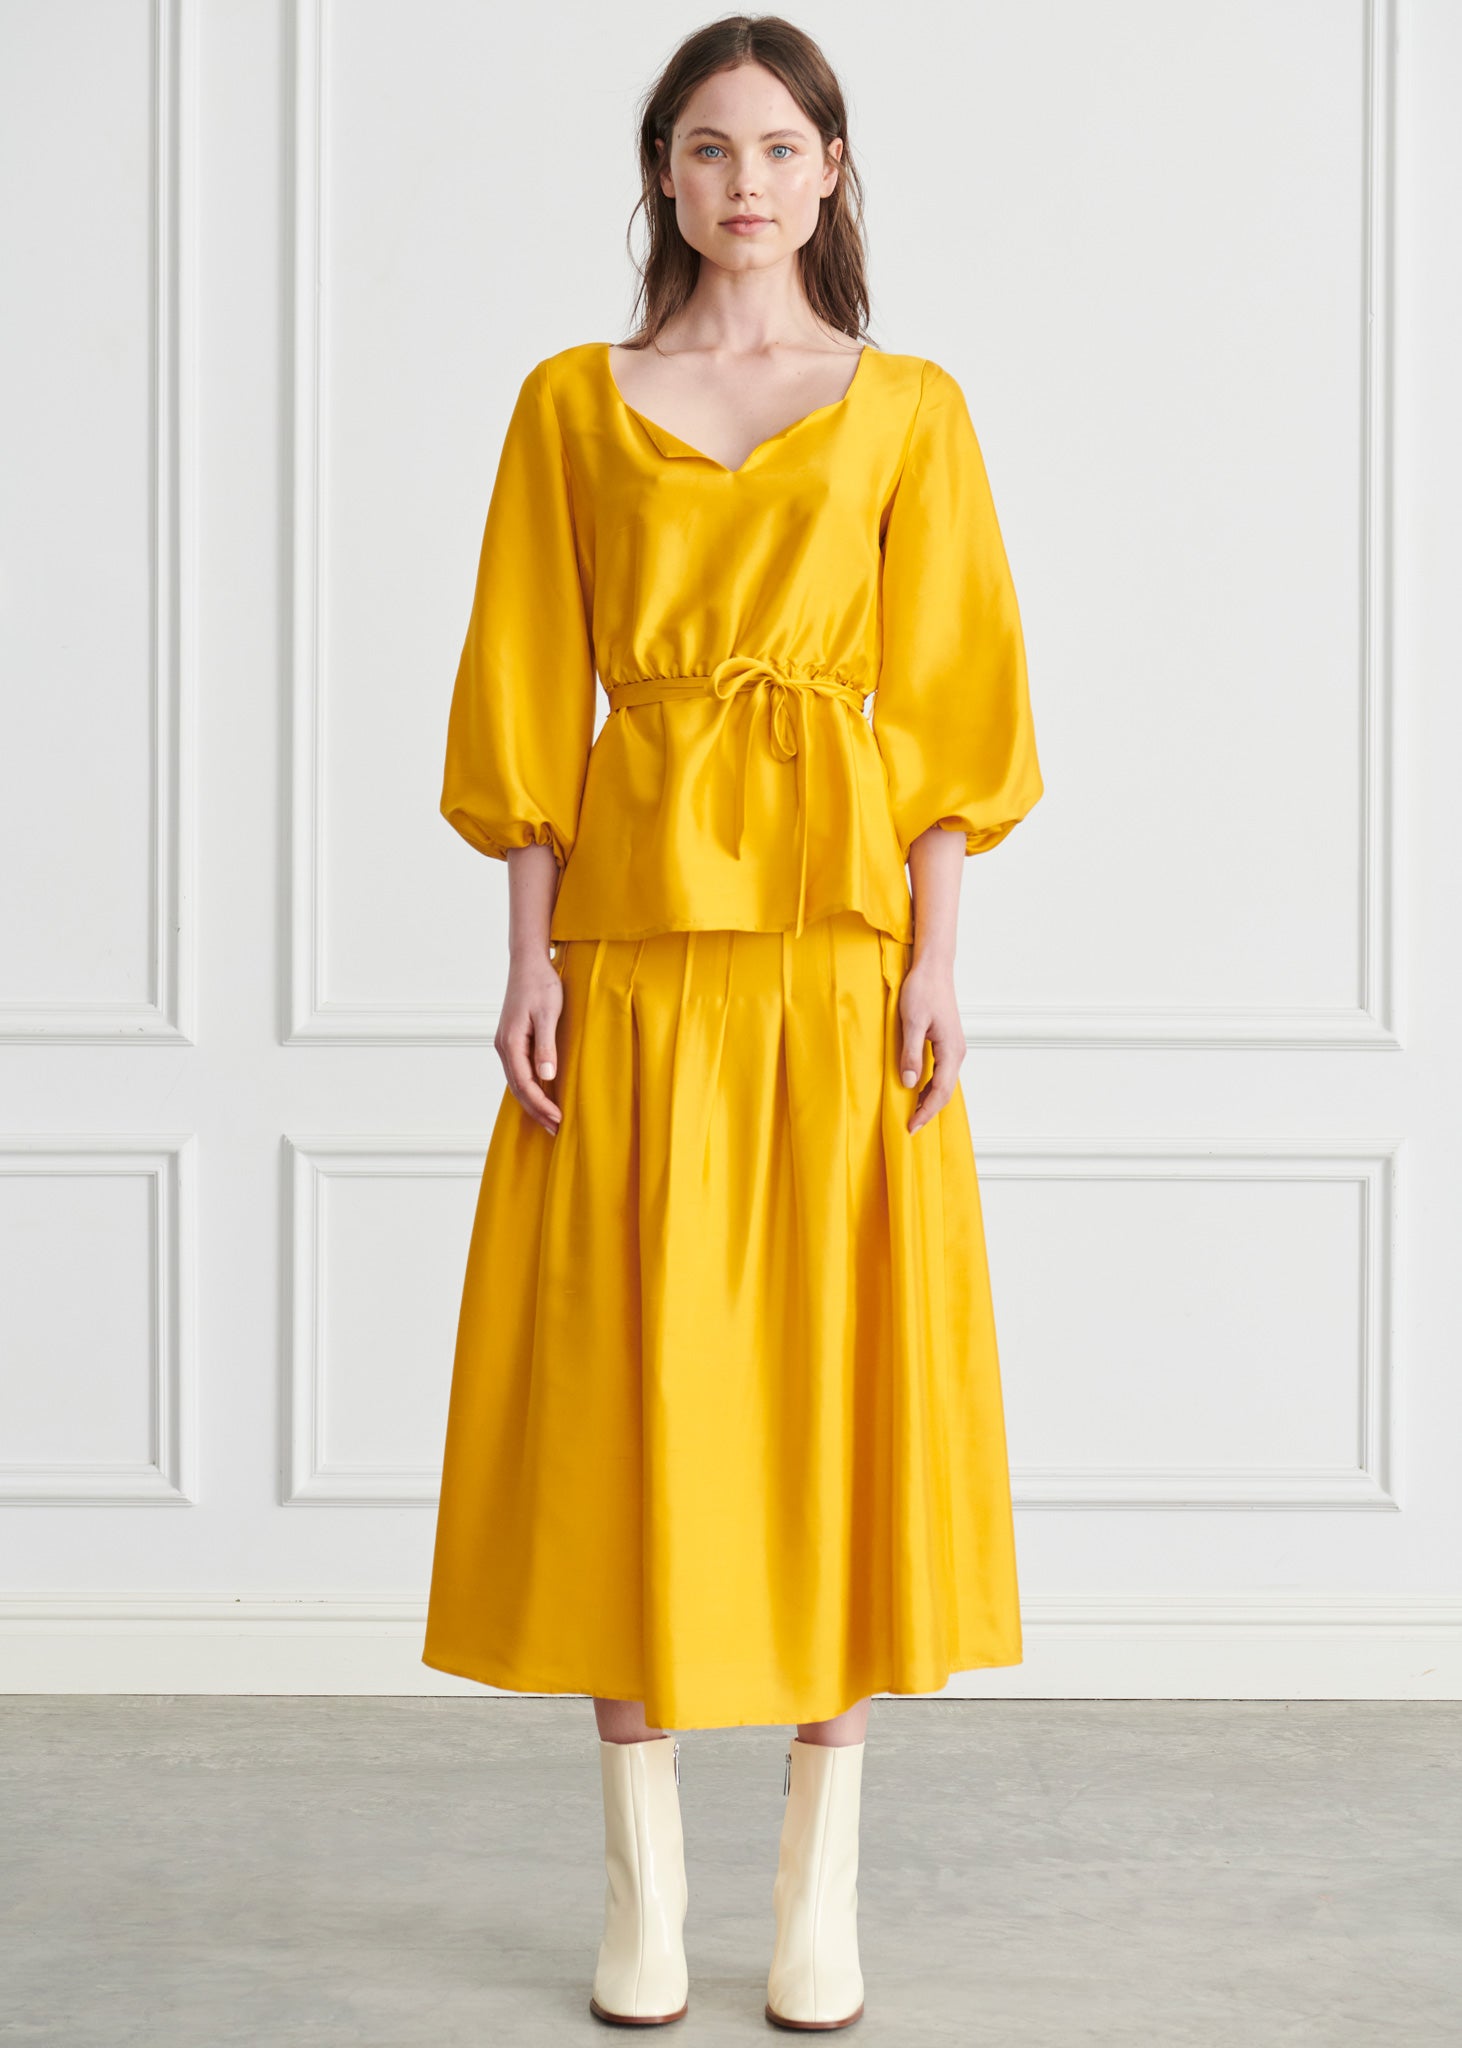 Ondine Reverse Pleat Skirt - Yellow